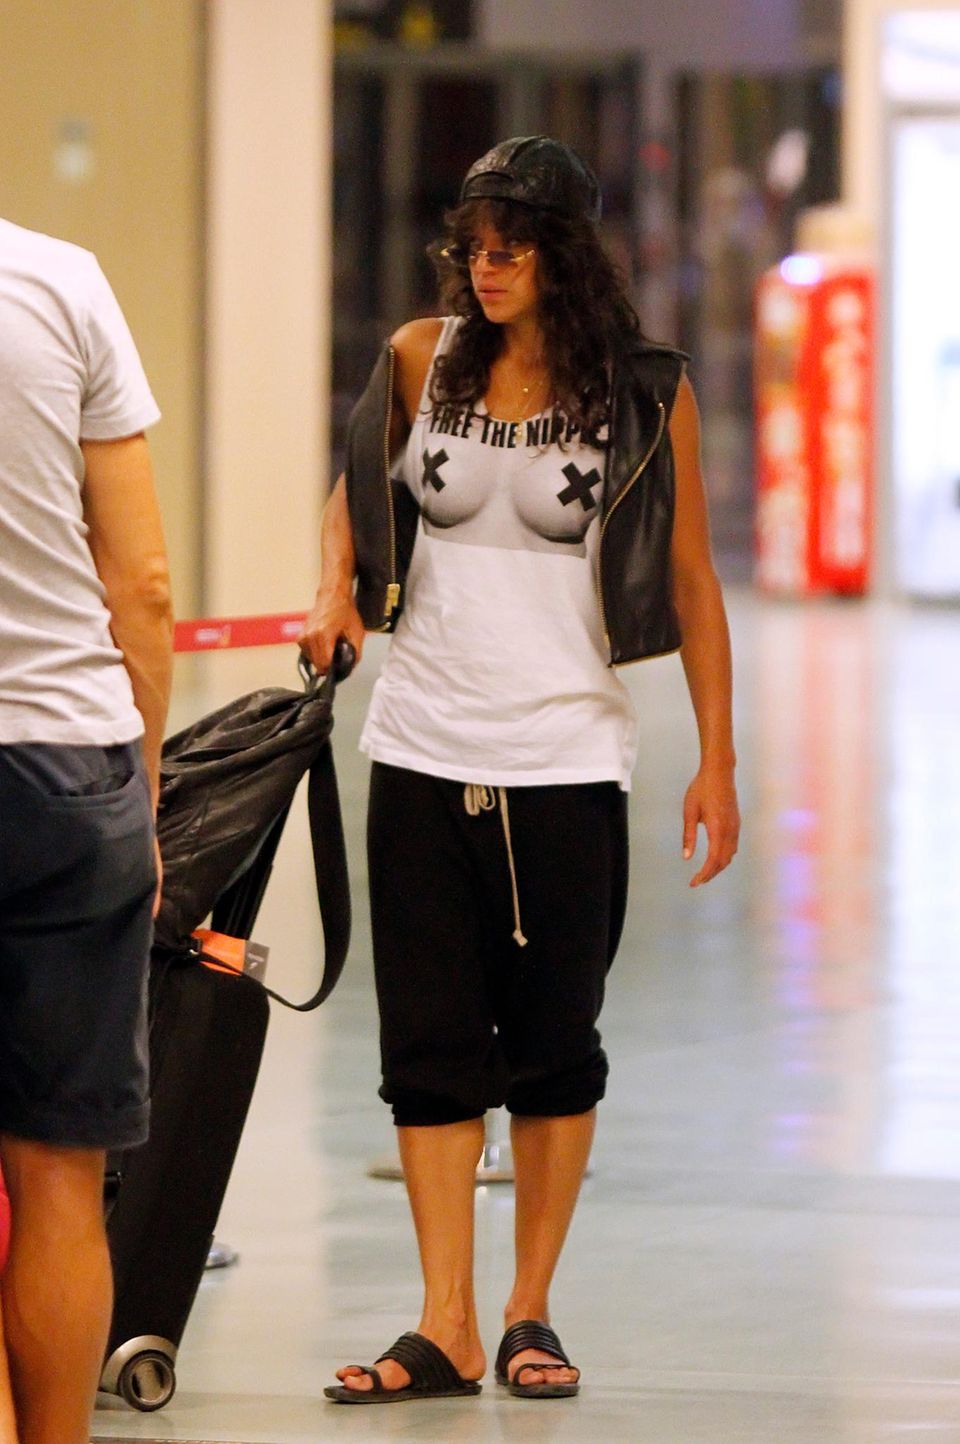 "Free The Nipple" ist das Statement, das Michelle Rodriguez per T-Shirt am Flughafen von Ibiza abgibt.